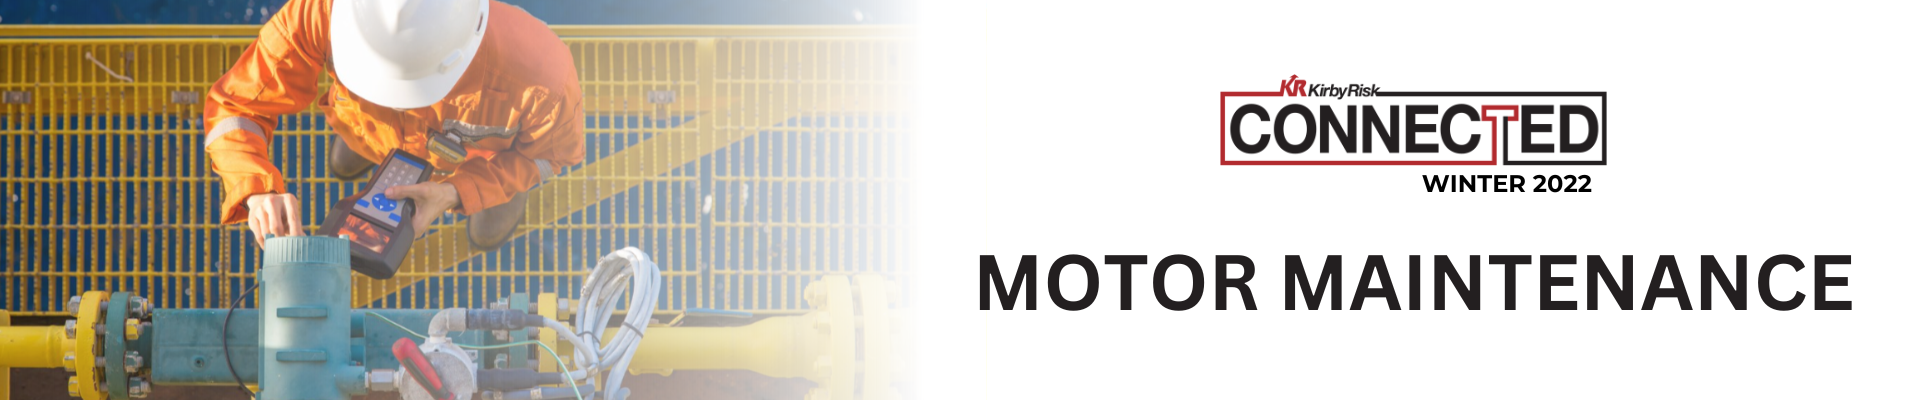 Motor Maintenance Blog Header